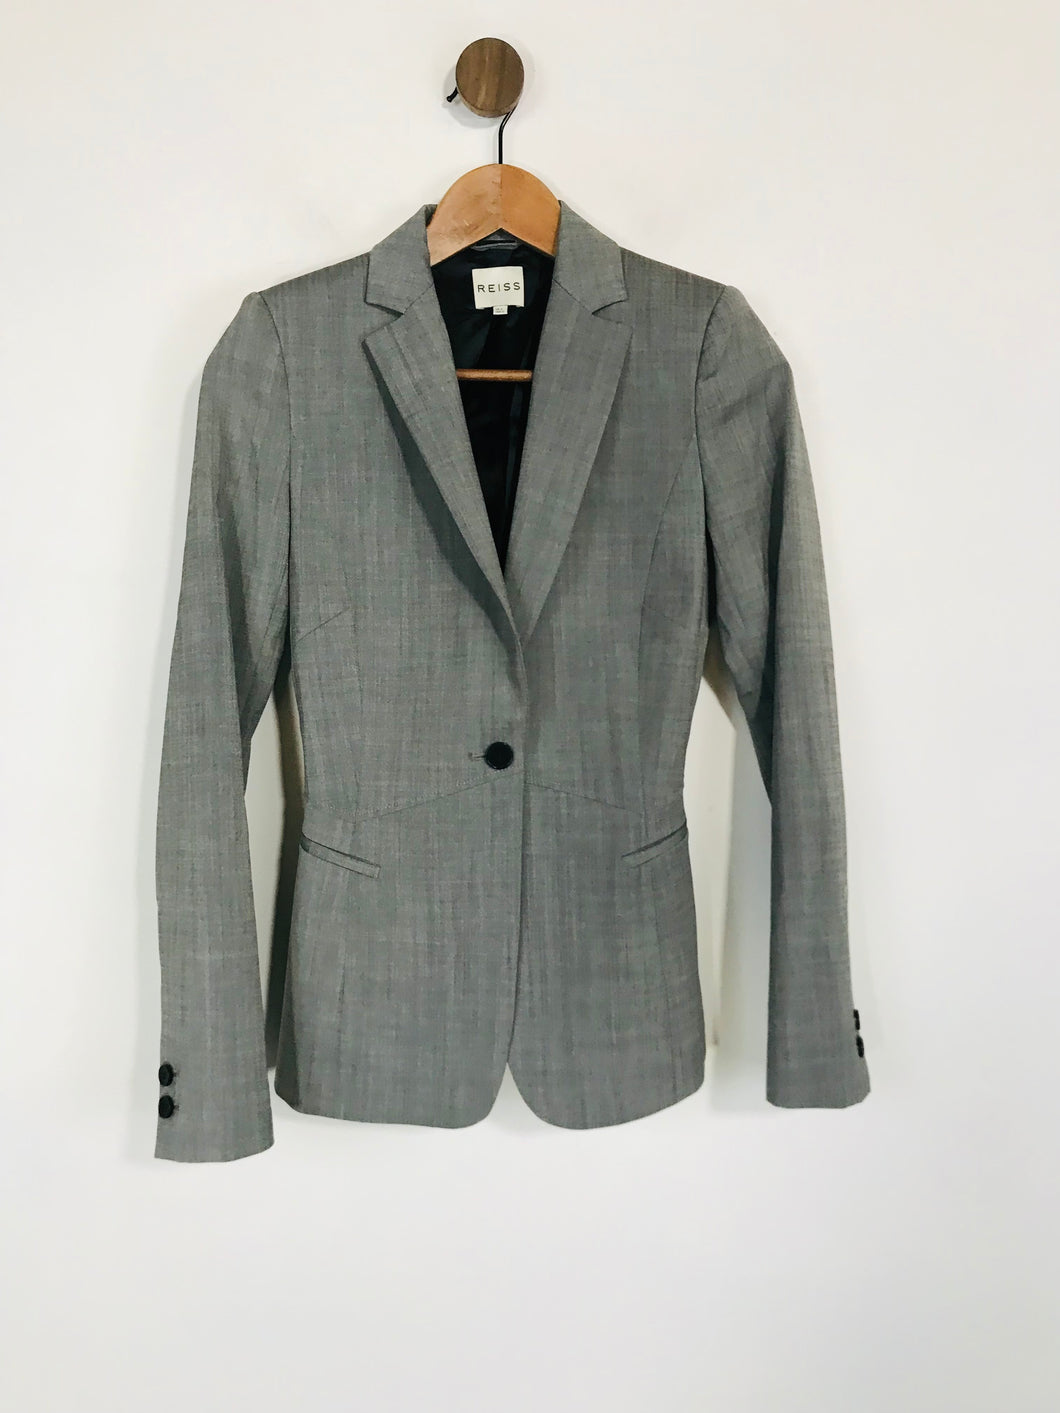 Reiss Women's Wool Smart Blazer Jacket | UK4 | Grey